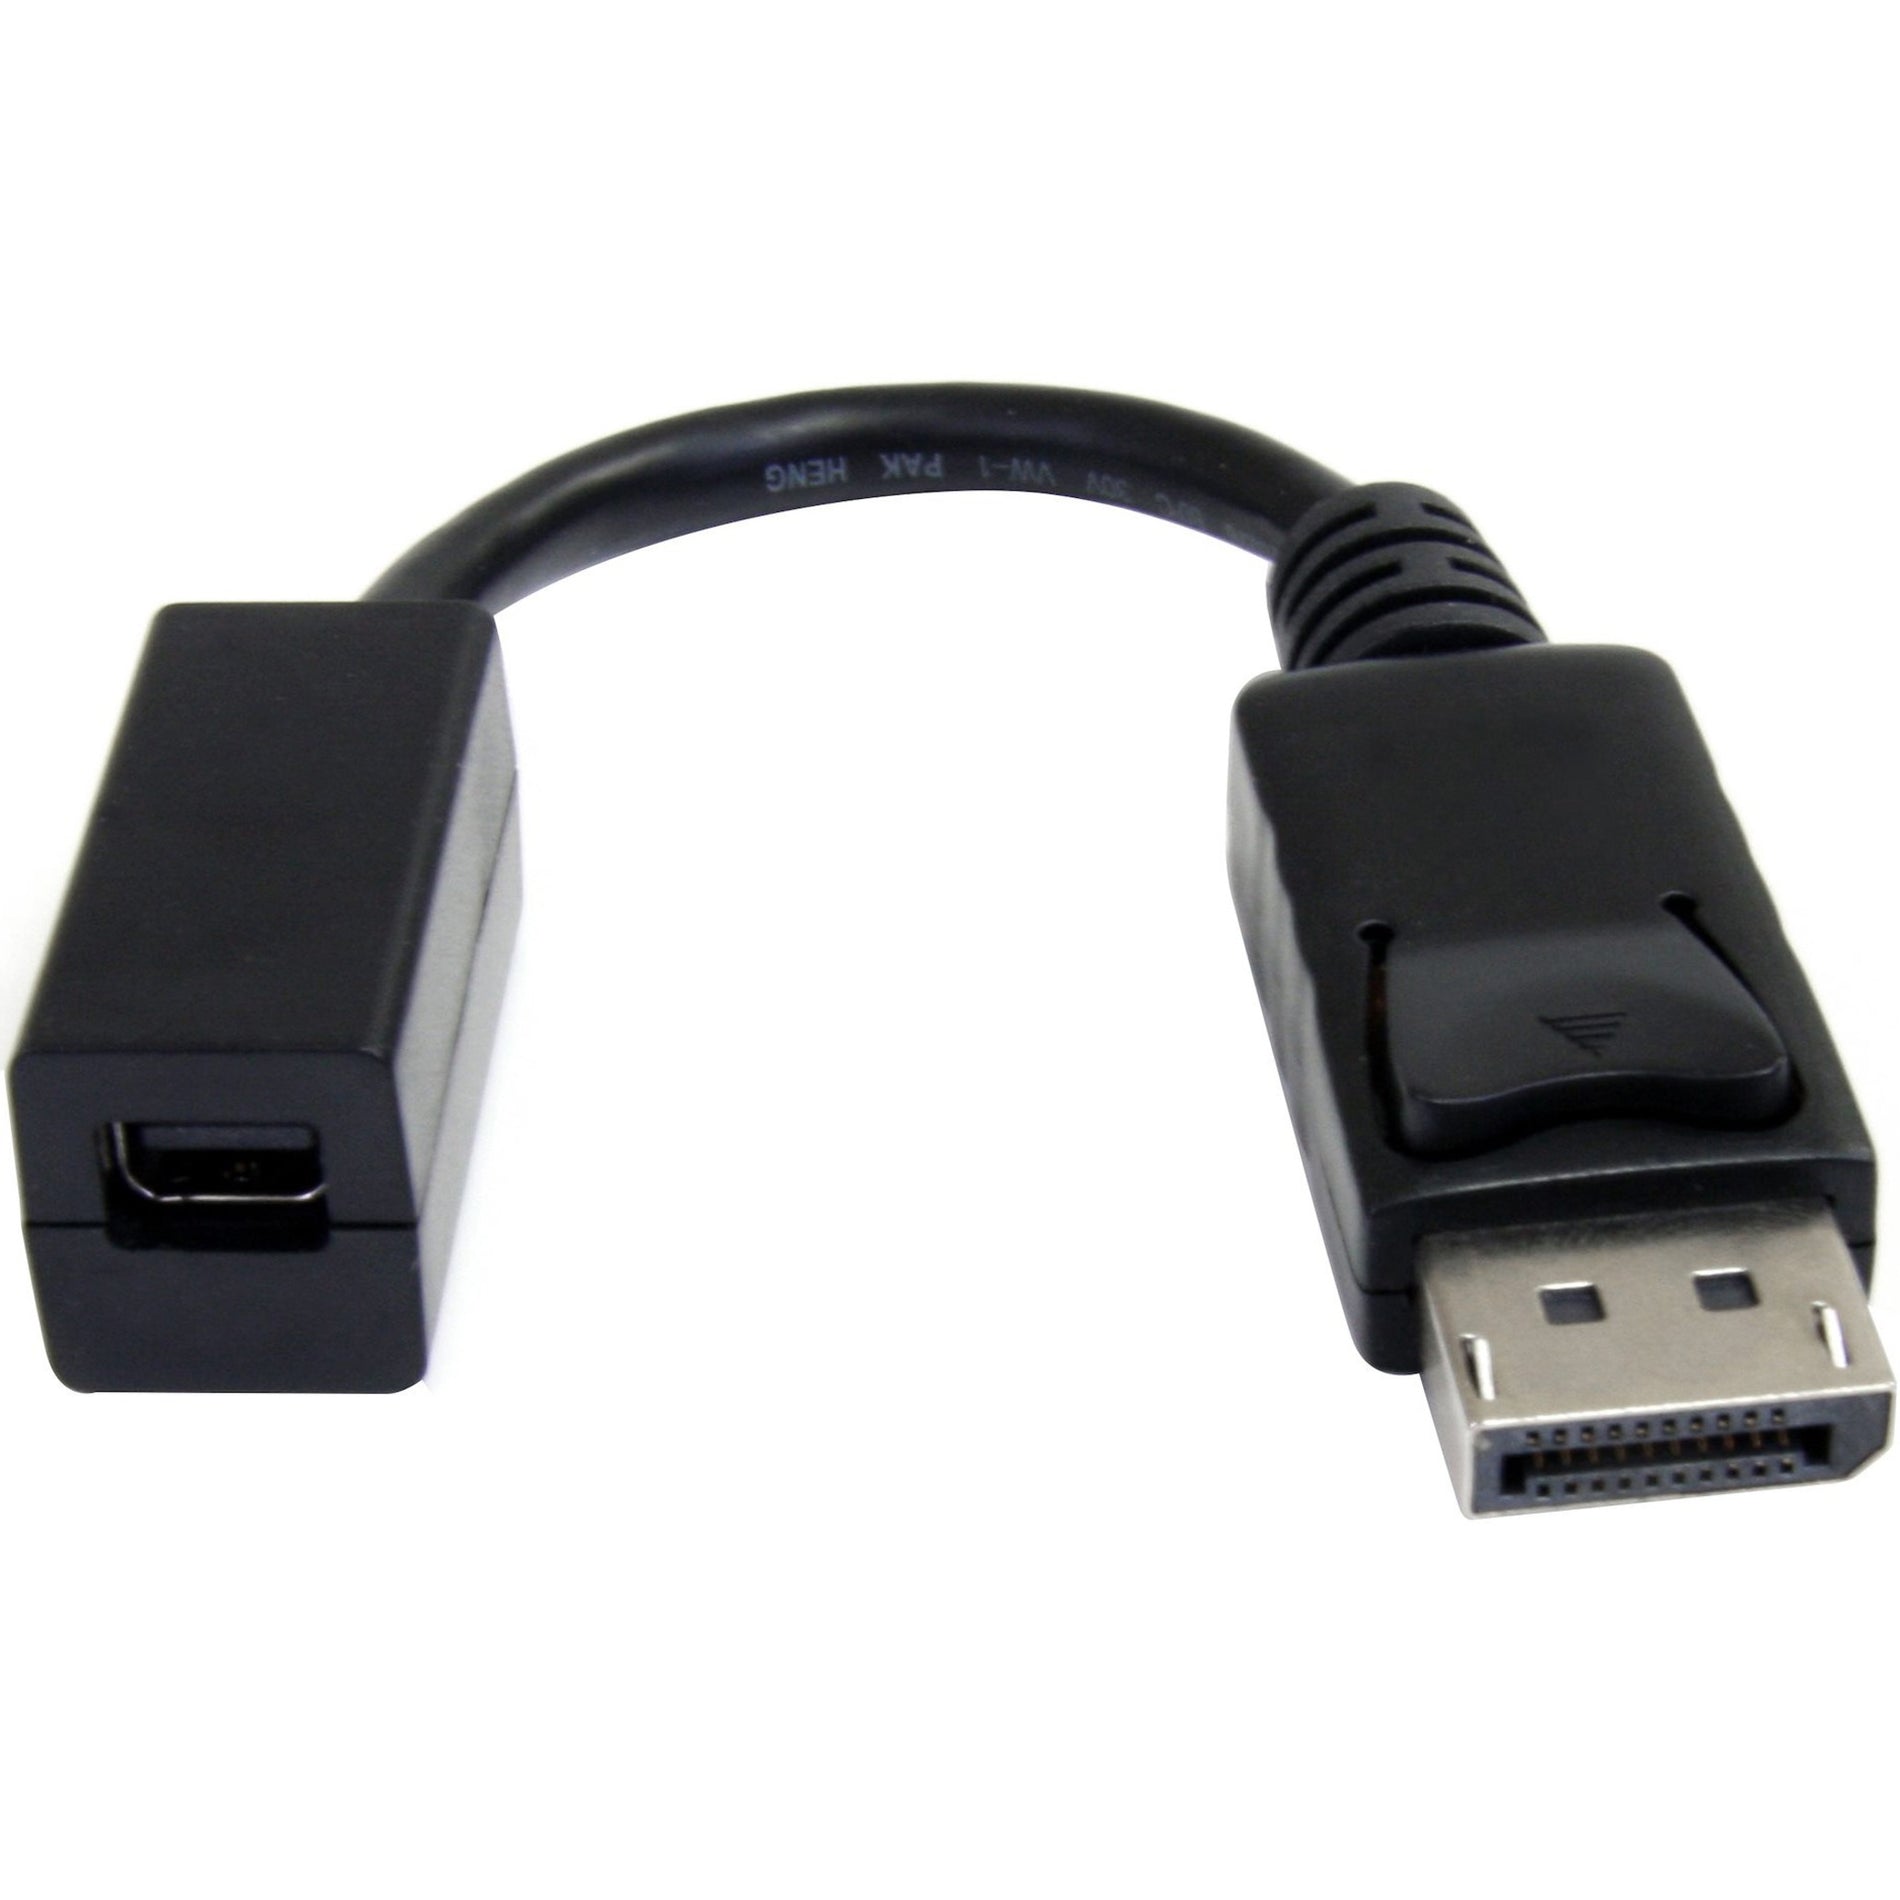 Adattatore cavo da DisplayPort a Mini DisplayPort da 6 pollici connettore a scatto protezione dalla tensione sagomato